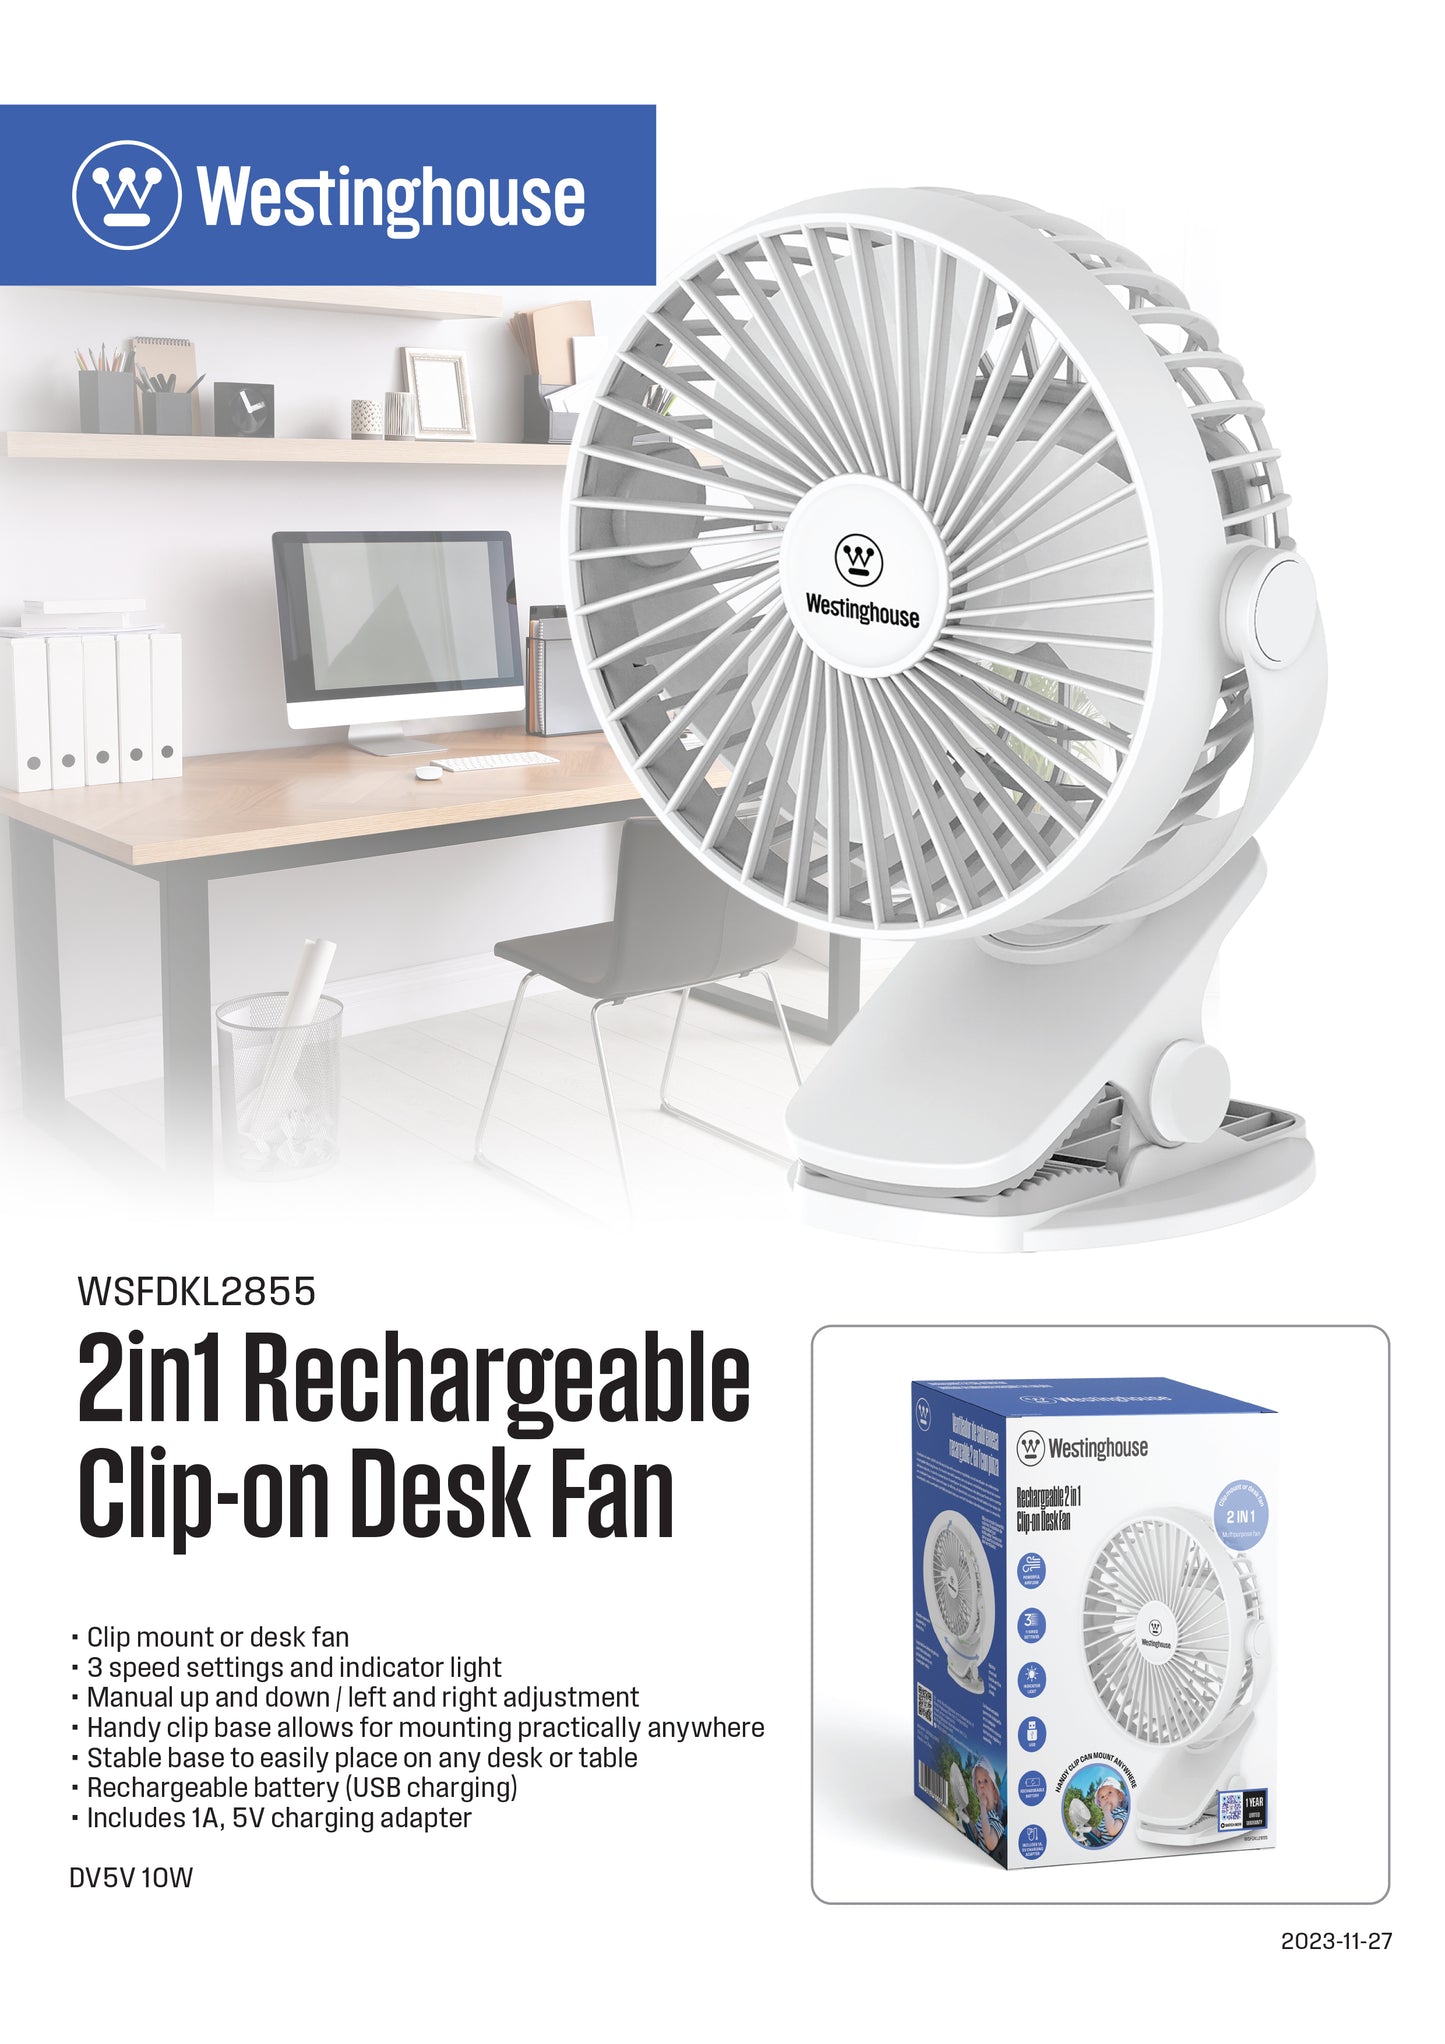 2 in 1 Rechargeable Clip/Table Fan + Adaptor